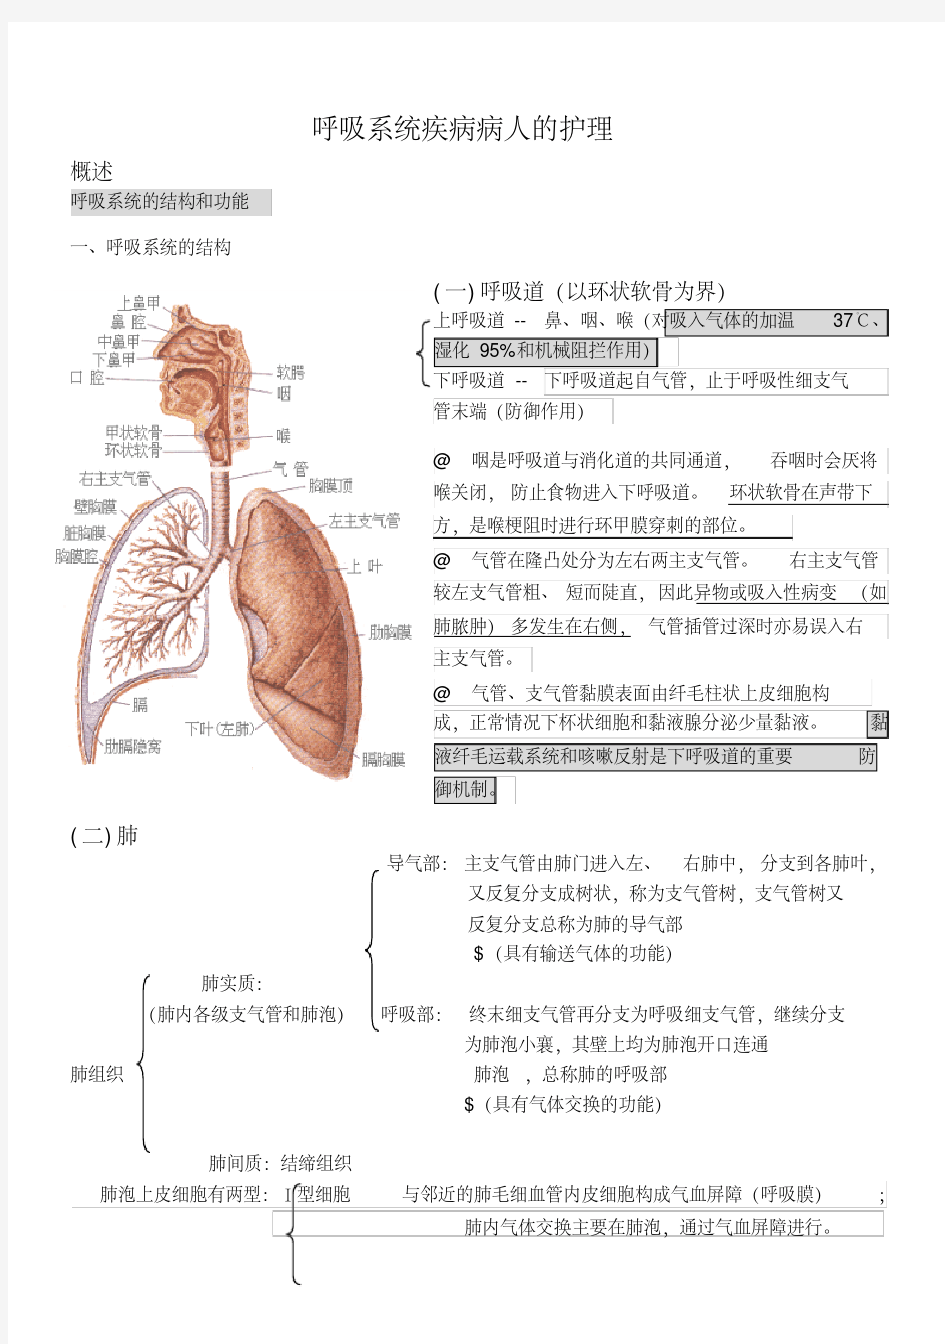 内科护理学笔记(呼吸系统)-新版.pdf